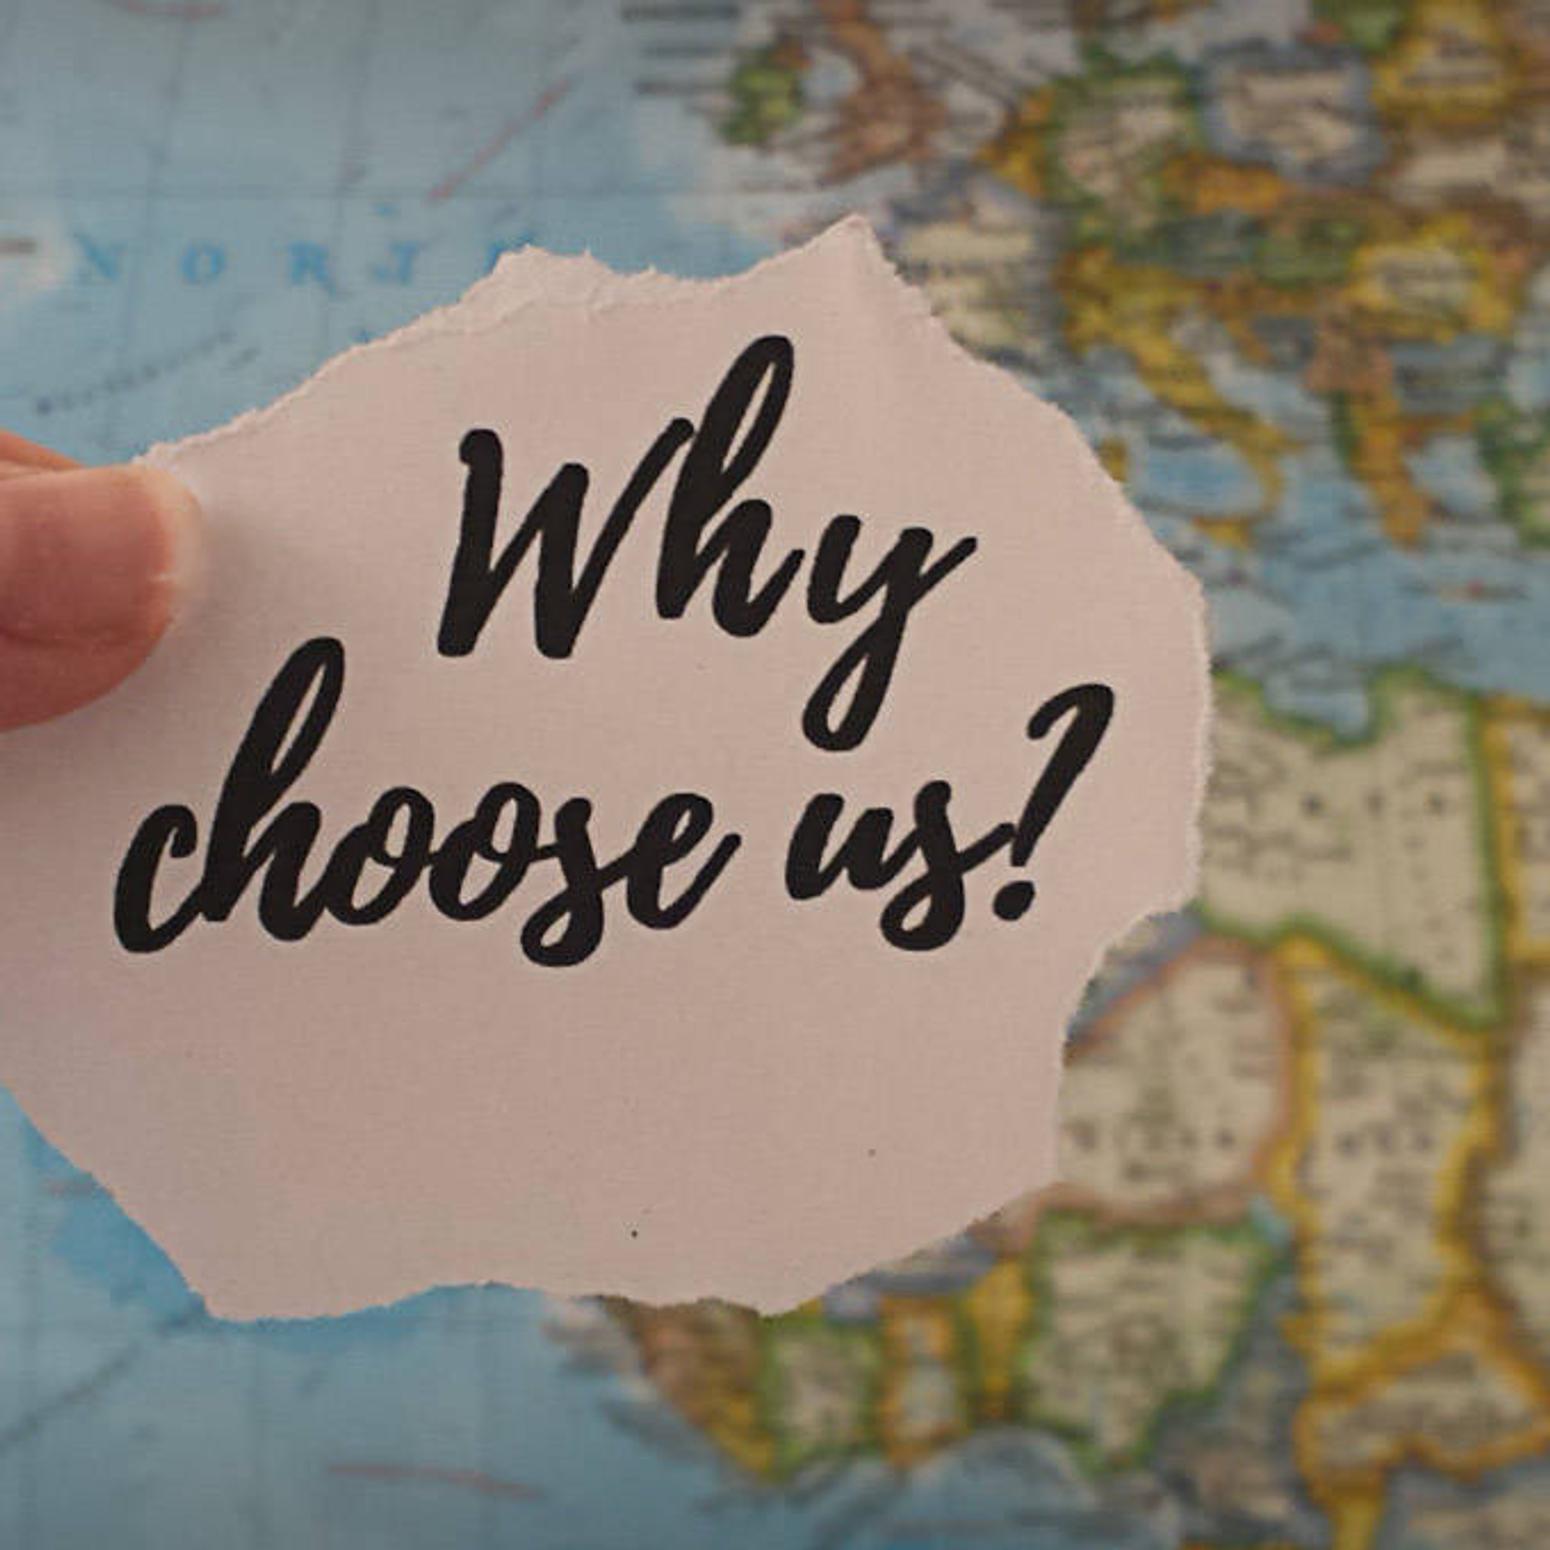 Ein Stück Papier mit der Aufschrift "why choose us?" wird vor eine Weltkarte gehalten. 